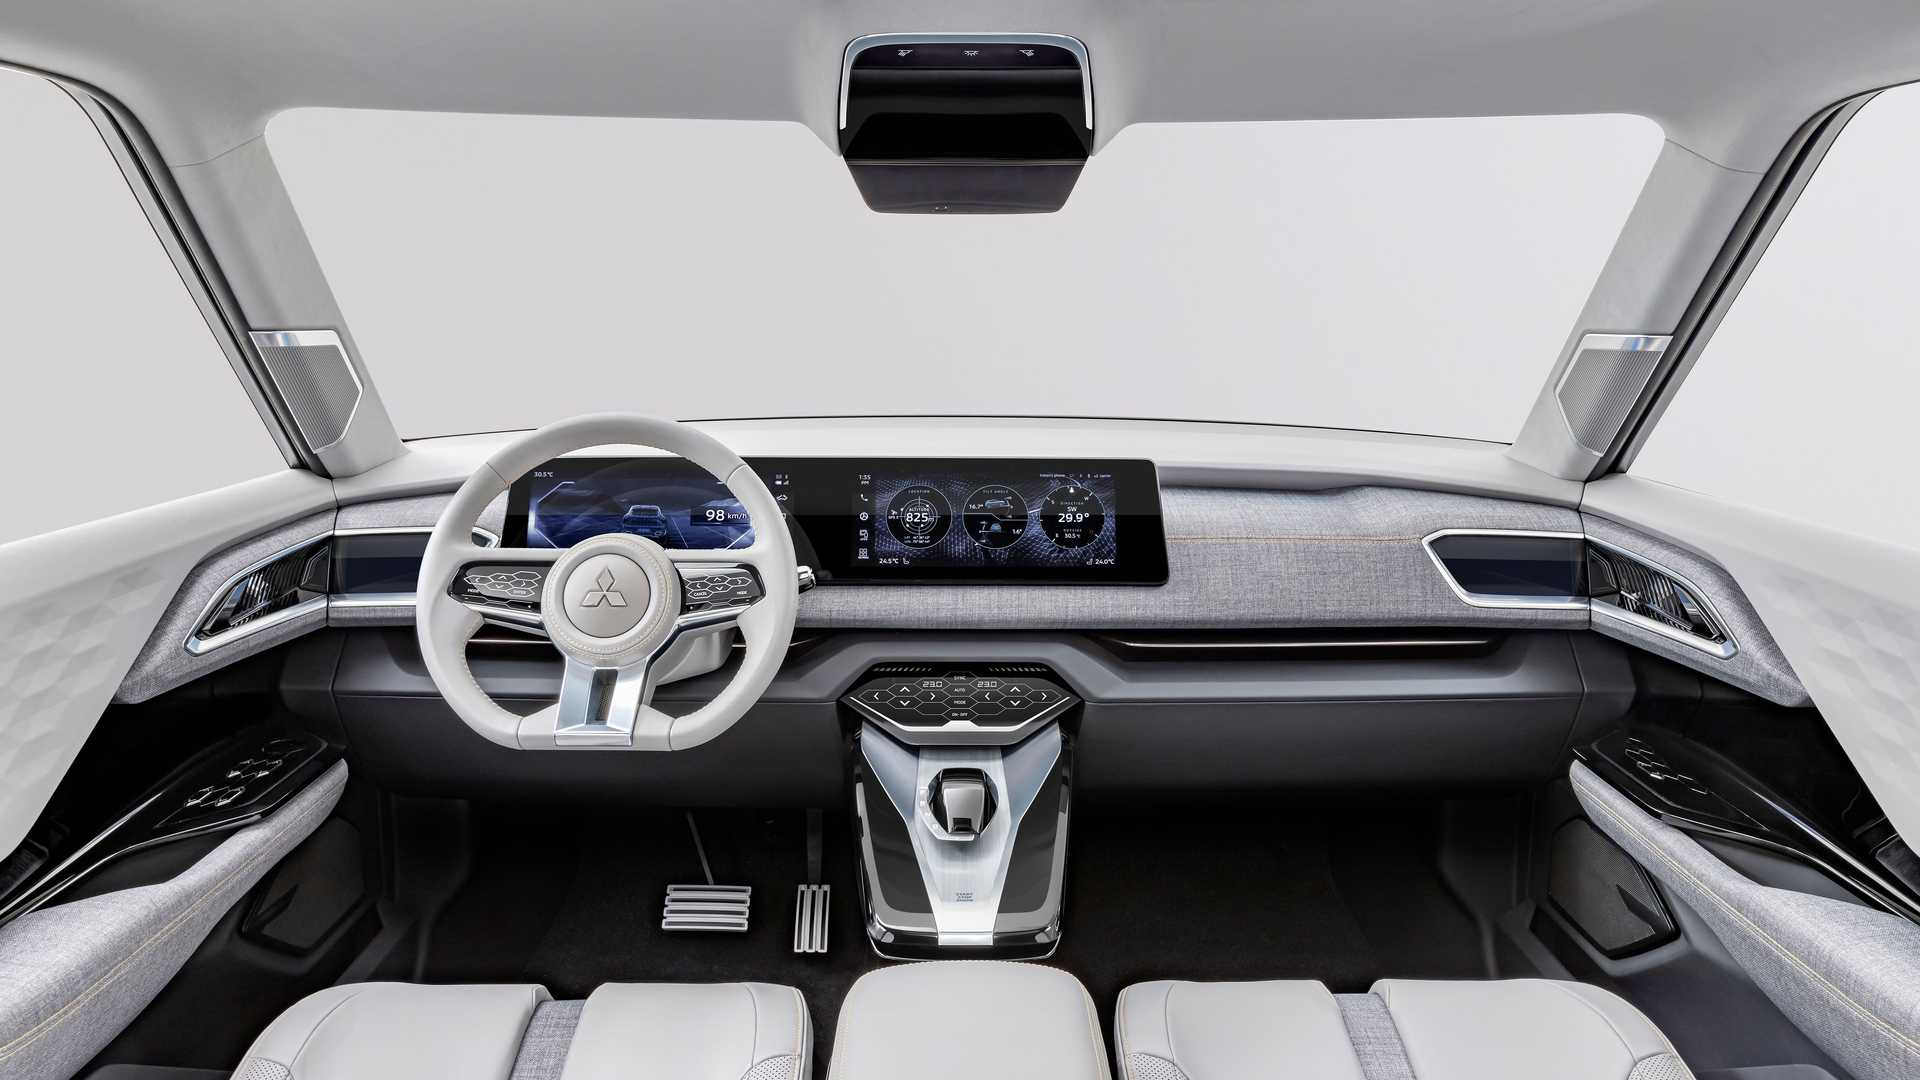 Interior of the Mitsubishi XFC Concept